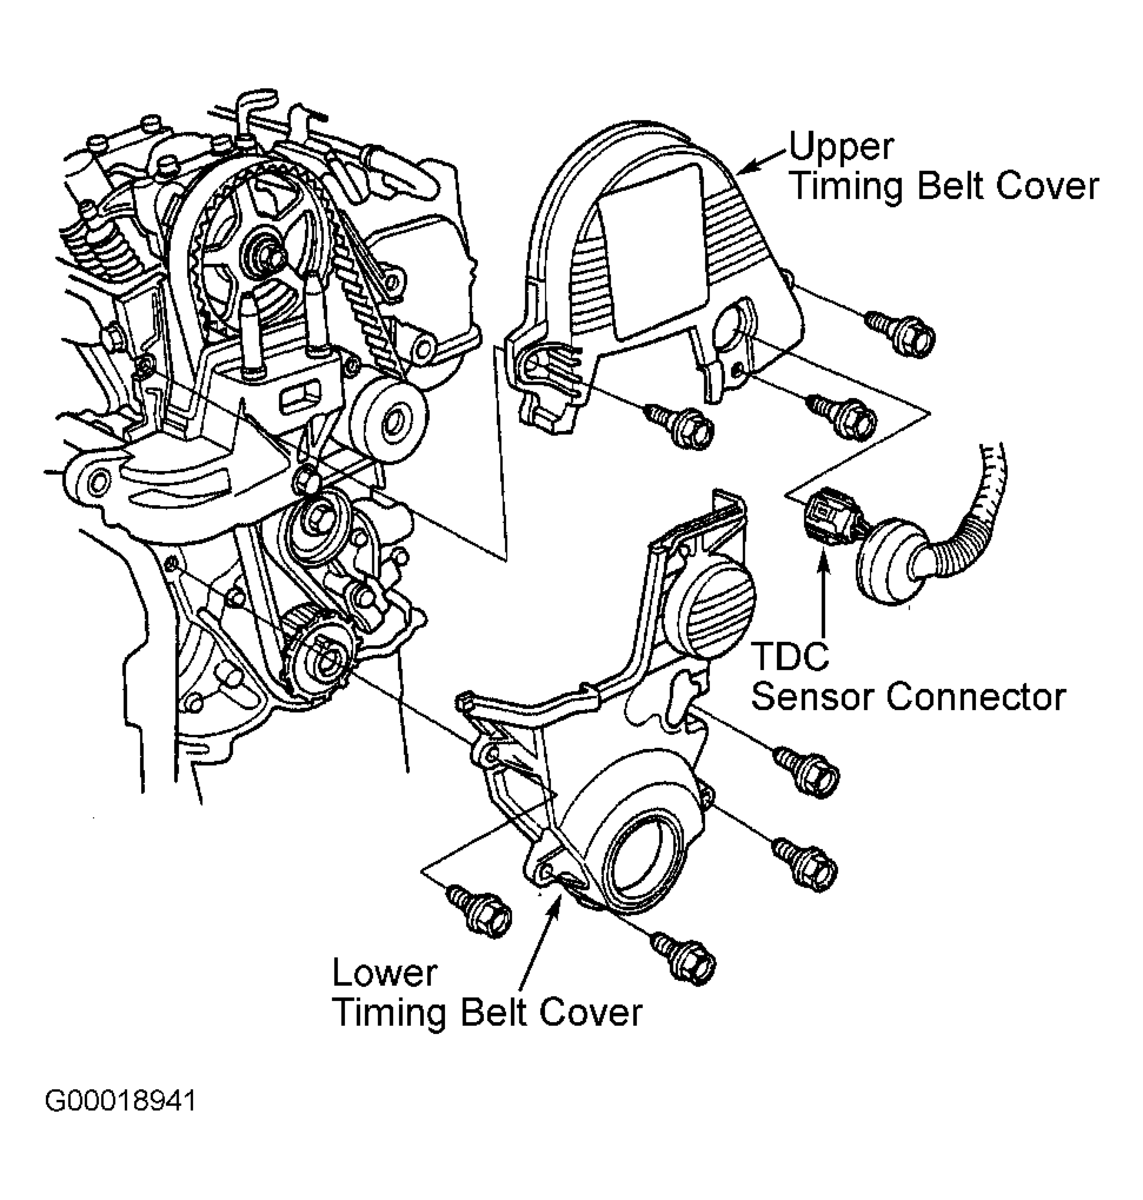 Honda Civic 1.7L timing belt covers diagram